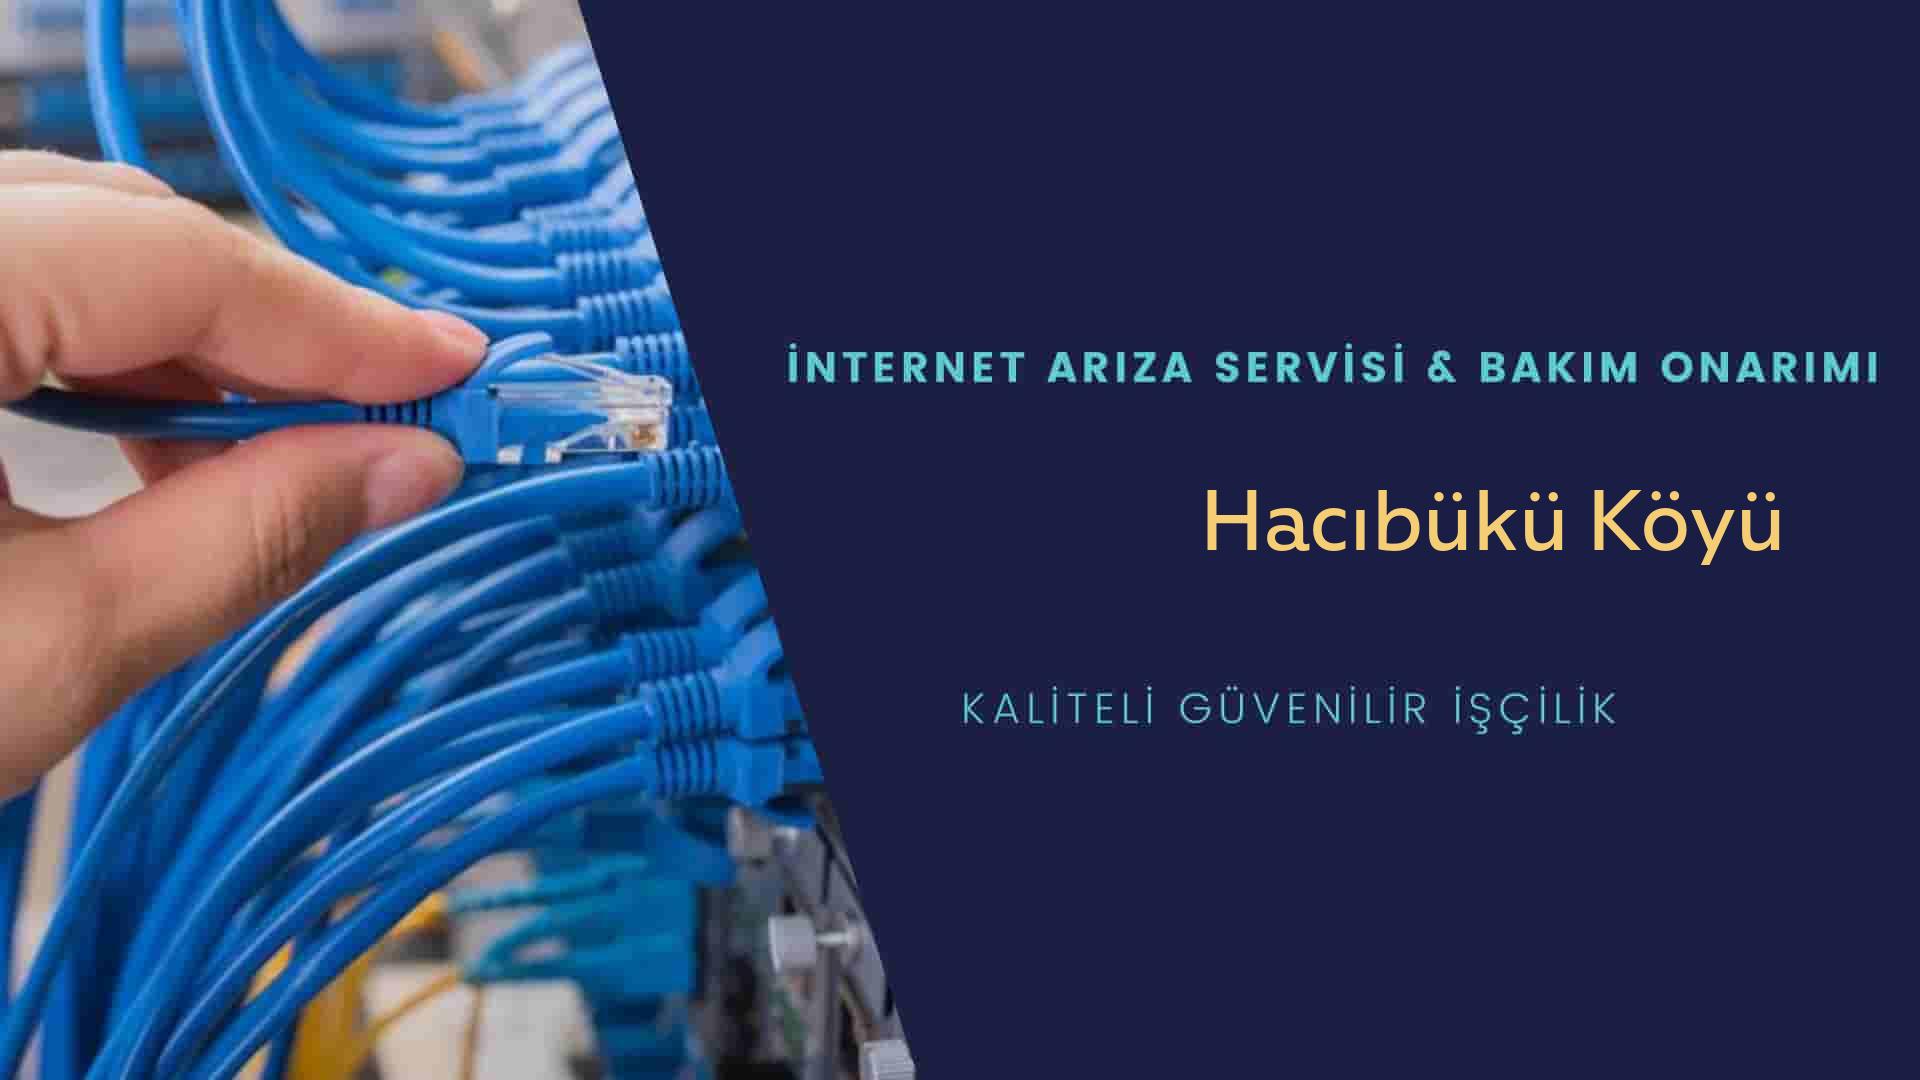 Hacıbükü Köyü internet kablosu çekimi yapan yerler veya elektrikçiler mi? arıyorsunuz doğru yerdesiniz o zaman sizlere 7/24 yardımcı olacak profesyonel ustalarımız bir telefon kadar yakındır size.